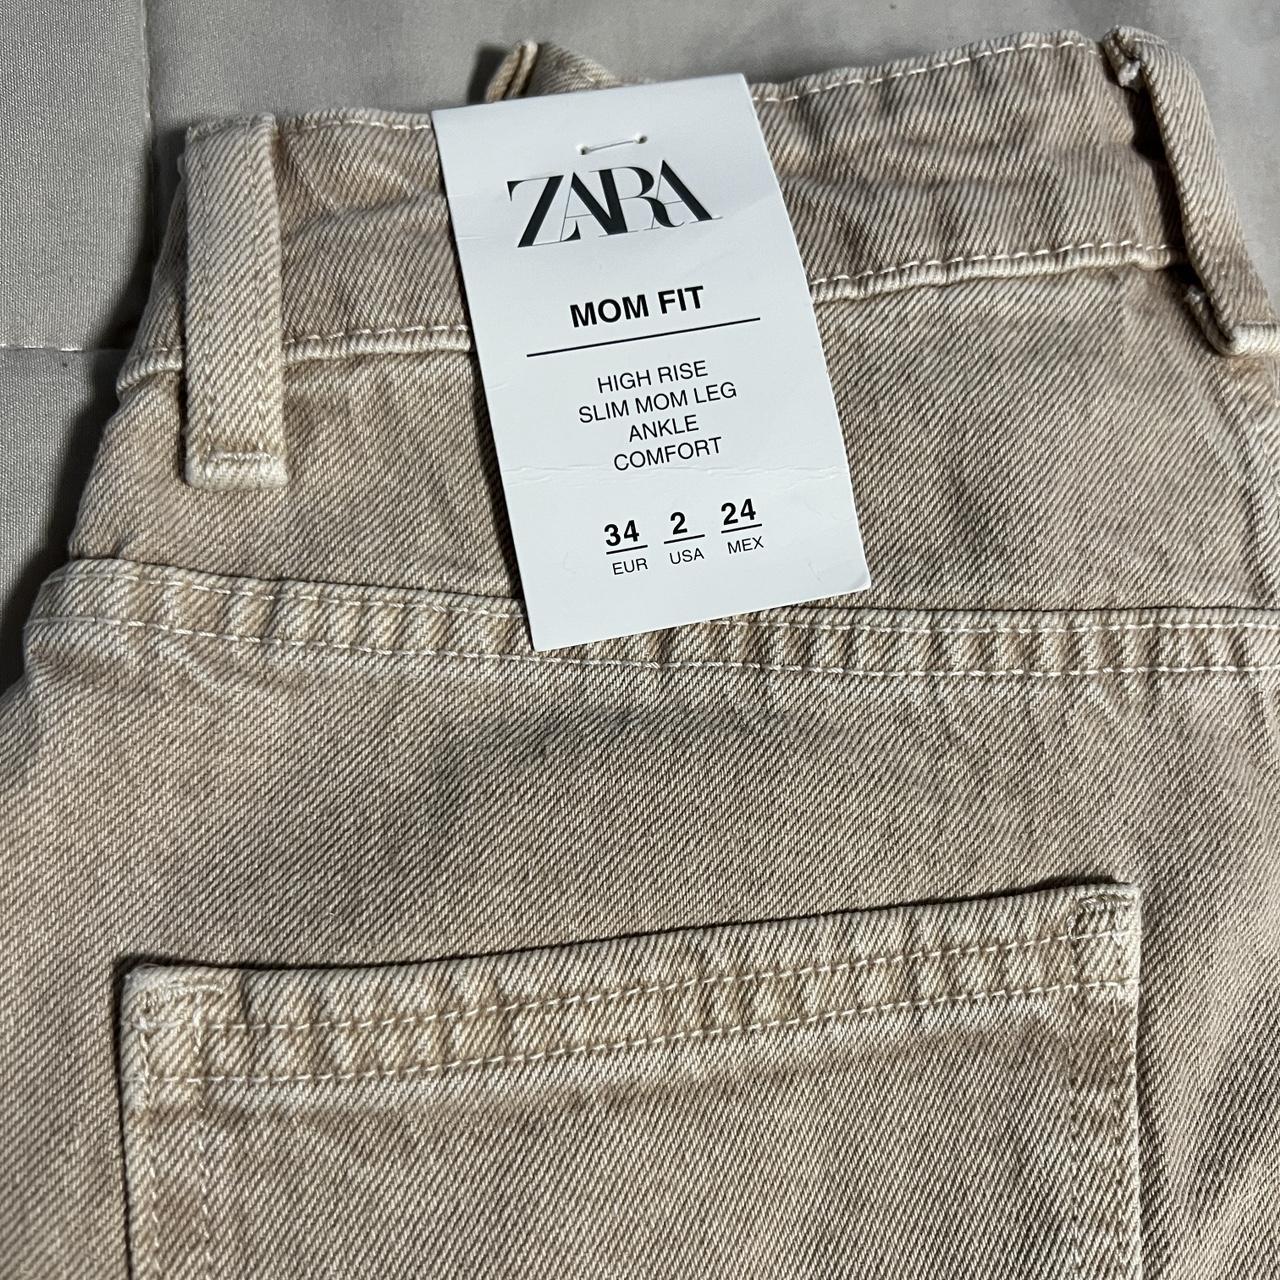 Zara Women's Tan Jeans | Depop